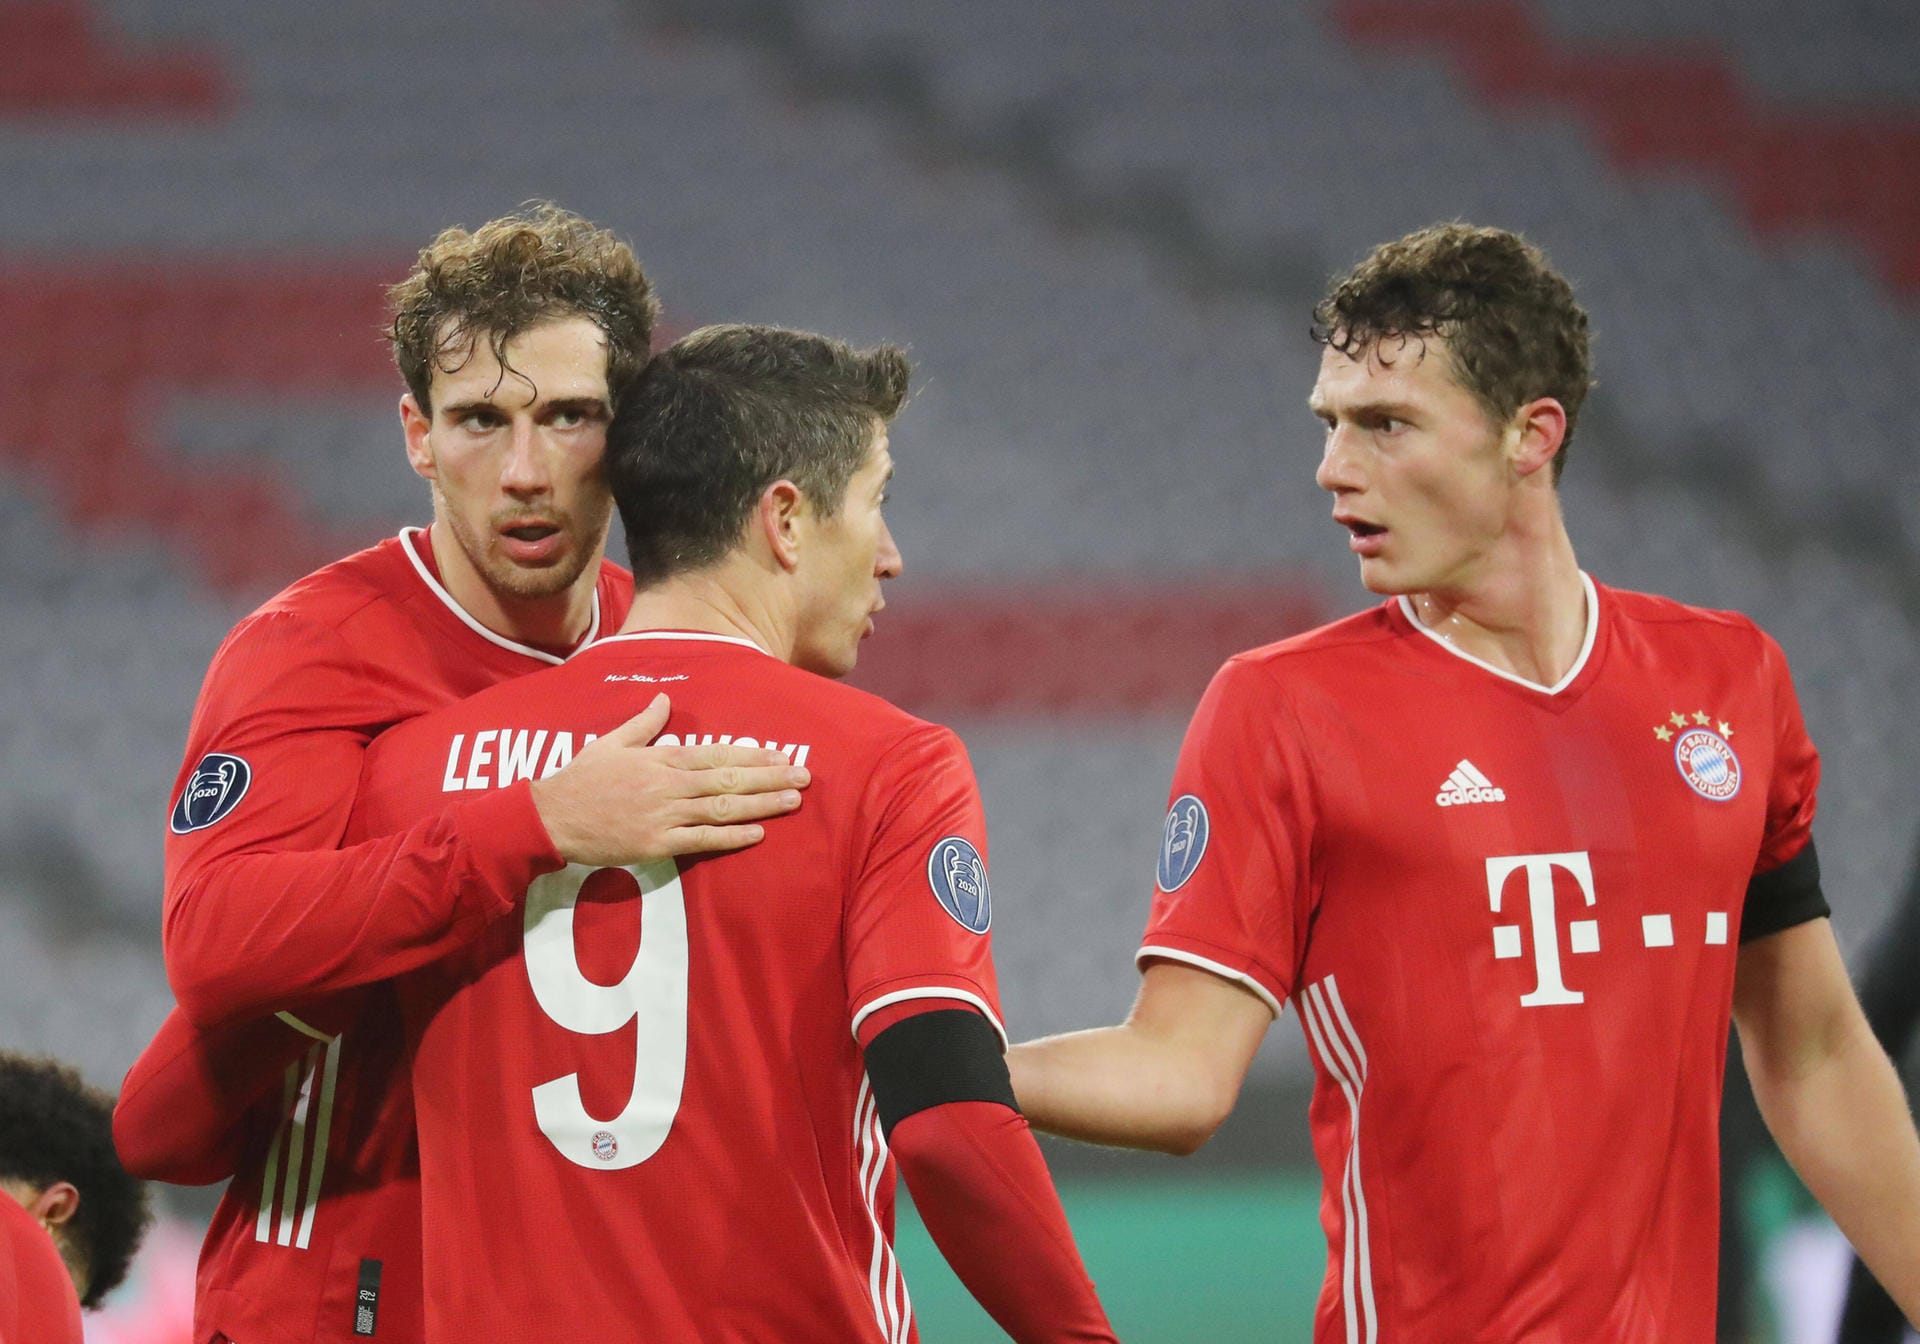 Der FC Bayern holt gegen den FC Salzburg den 15. Champions-League-Sieg in Folge. Robert Lewandowski wird zum Teilzeitarbeiter, ein Debütant ist überfordert – und Kingsley Coman der Matchwinner. Die Münchner in der Einzelkritik.